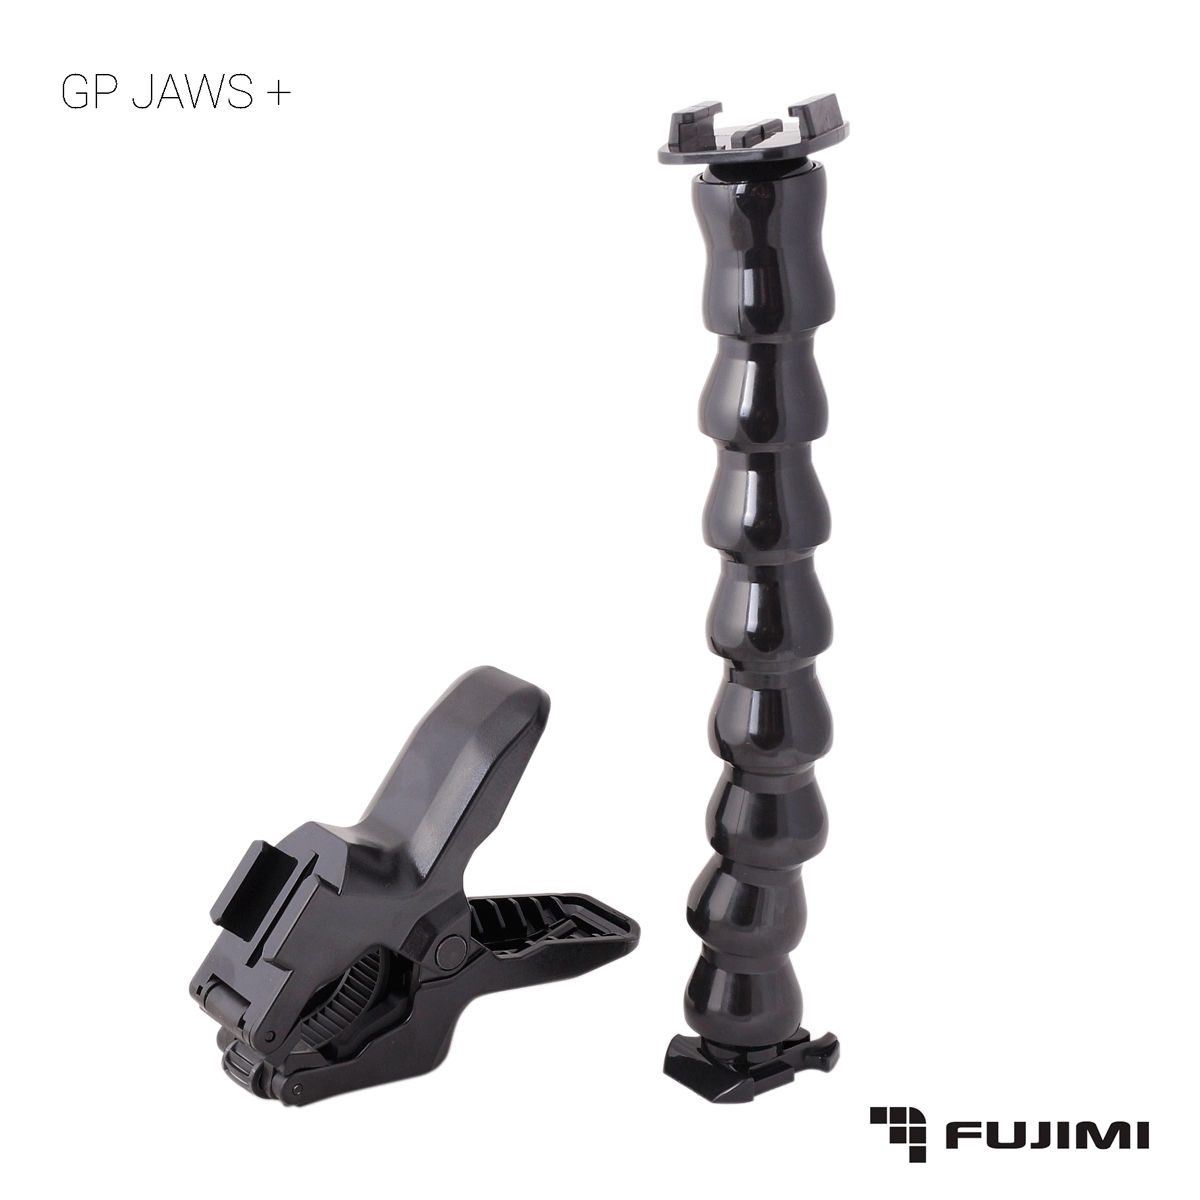  Fujimi  GP JAWS + гибкая штанга 